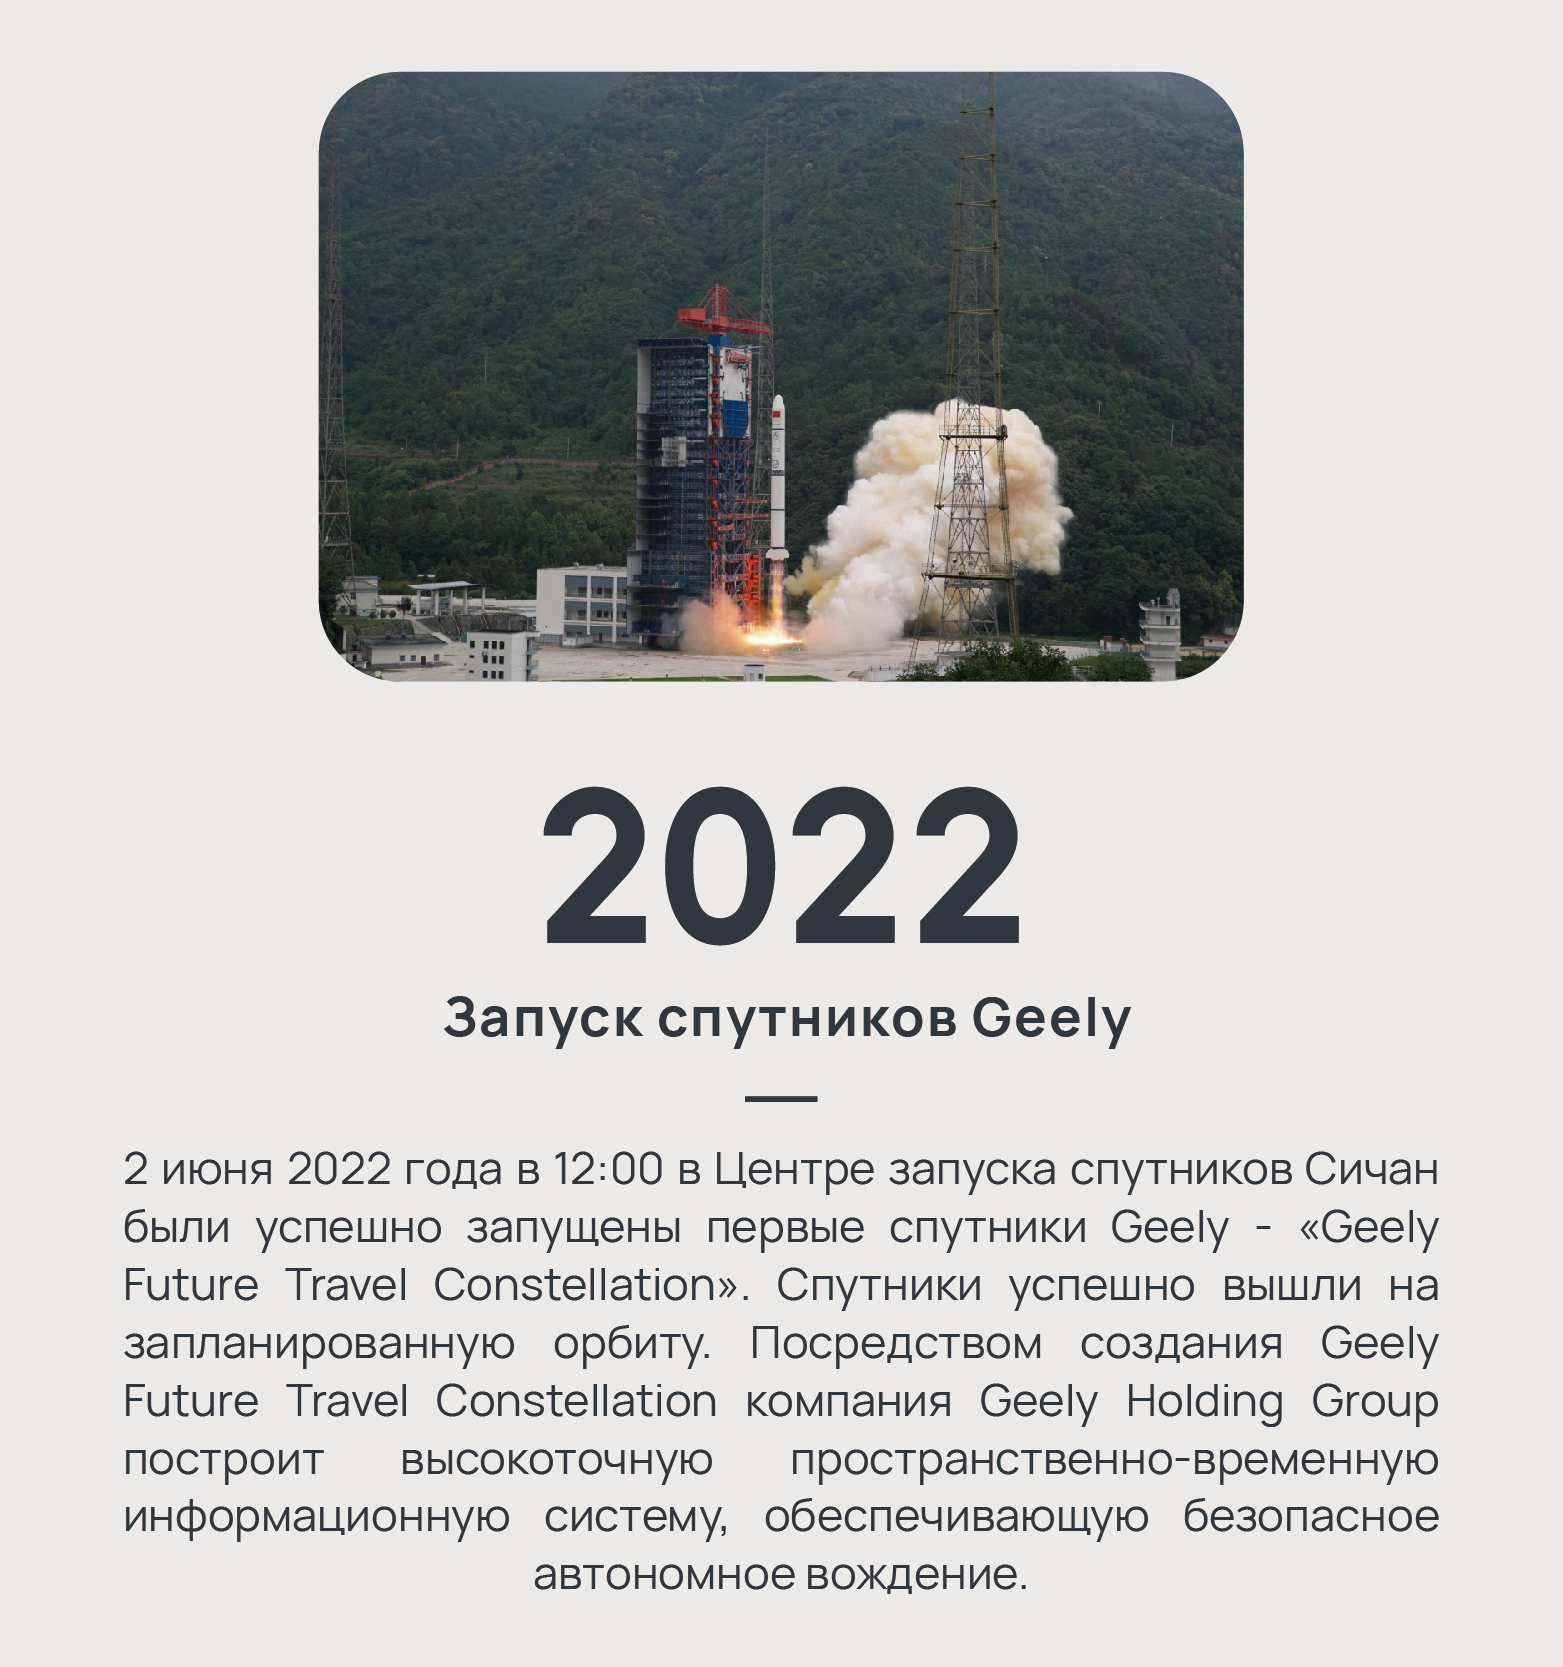 2022 - Запуск спутников Geely